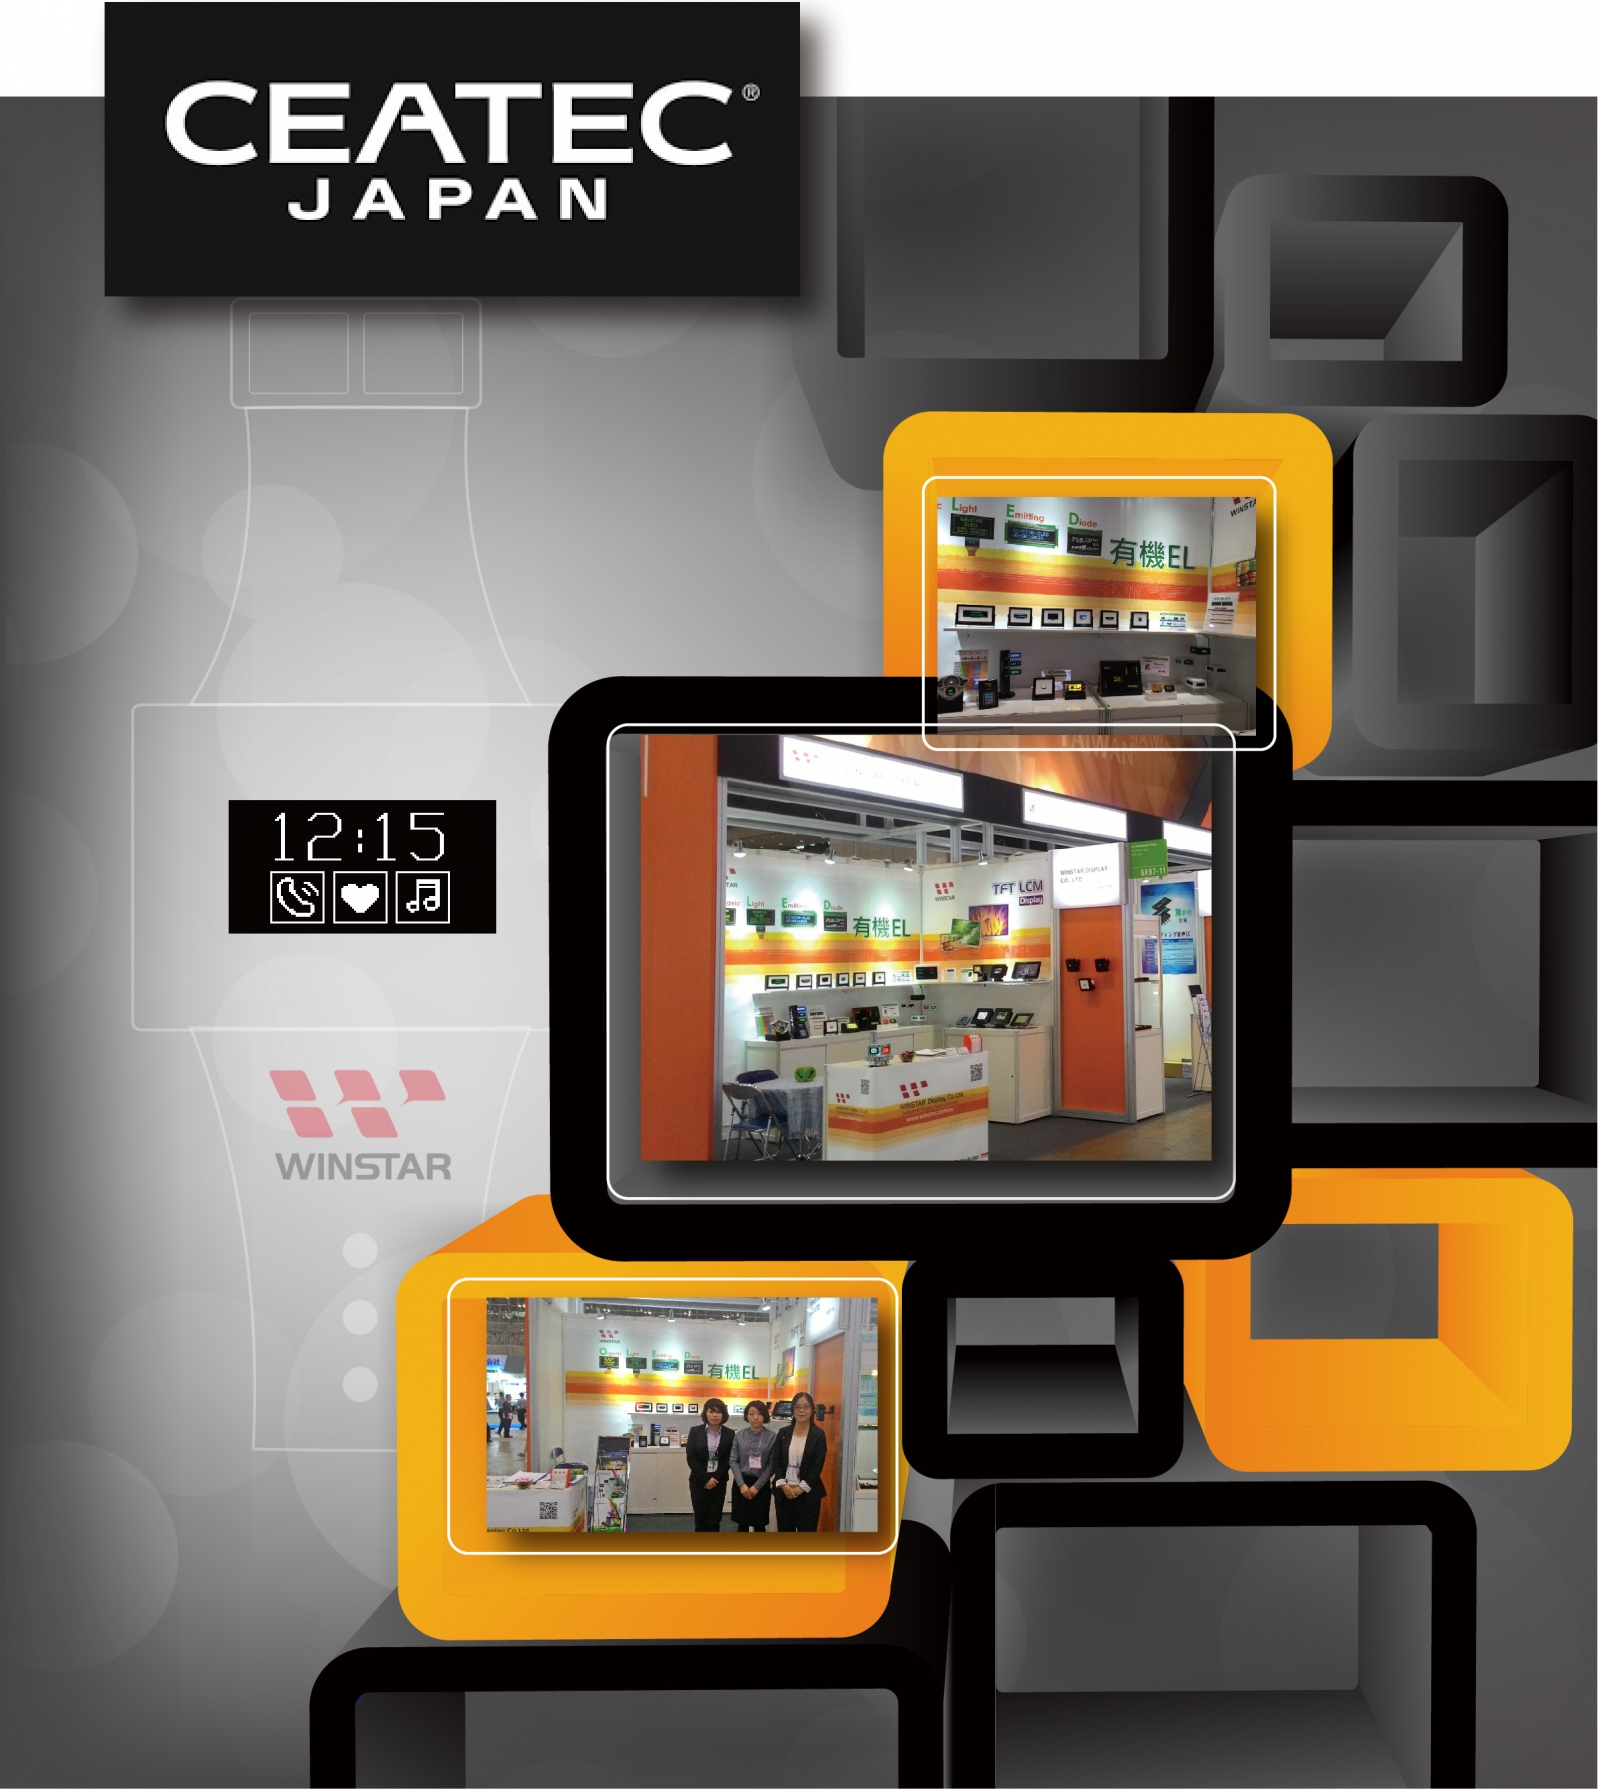 CEATEC Japan 2015, Winstar CEATEC - Winstar Photo